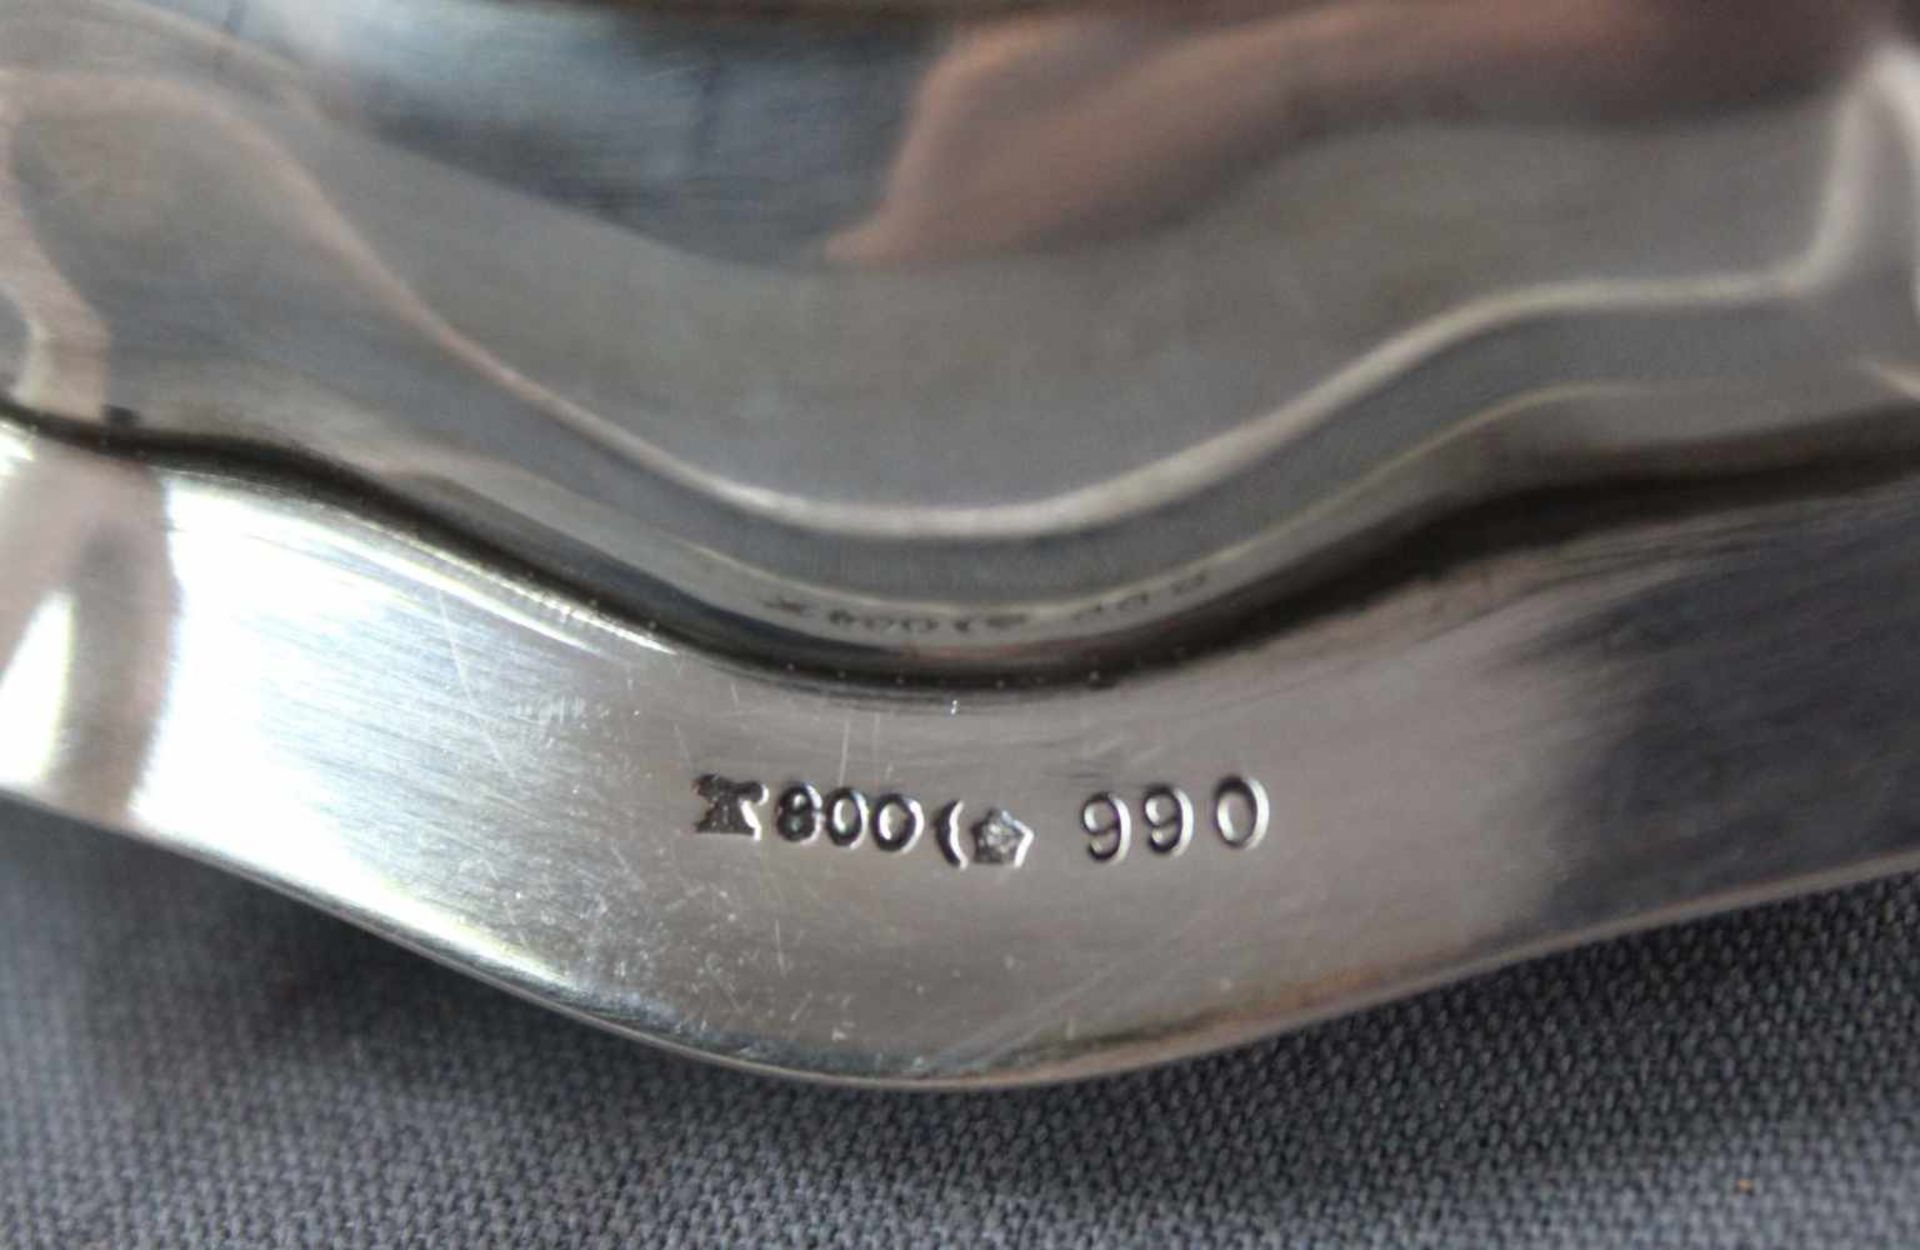 2 kleine Teller, Silber 800, Wilkens / Hessenberg Frankfurt am Main.237 Gramm. 15 cm im Durchmesser. - Image 8 of 10